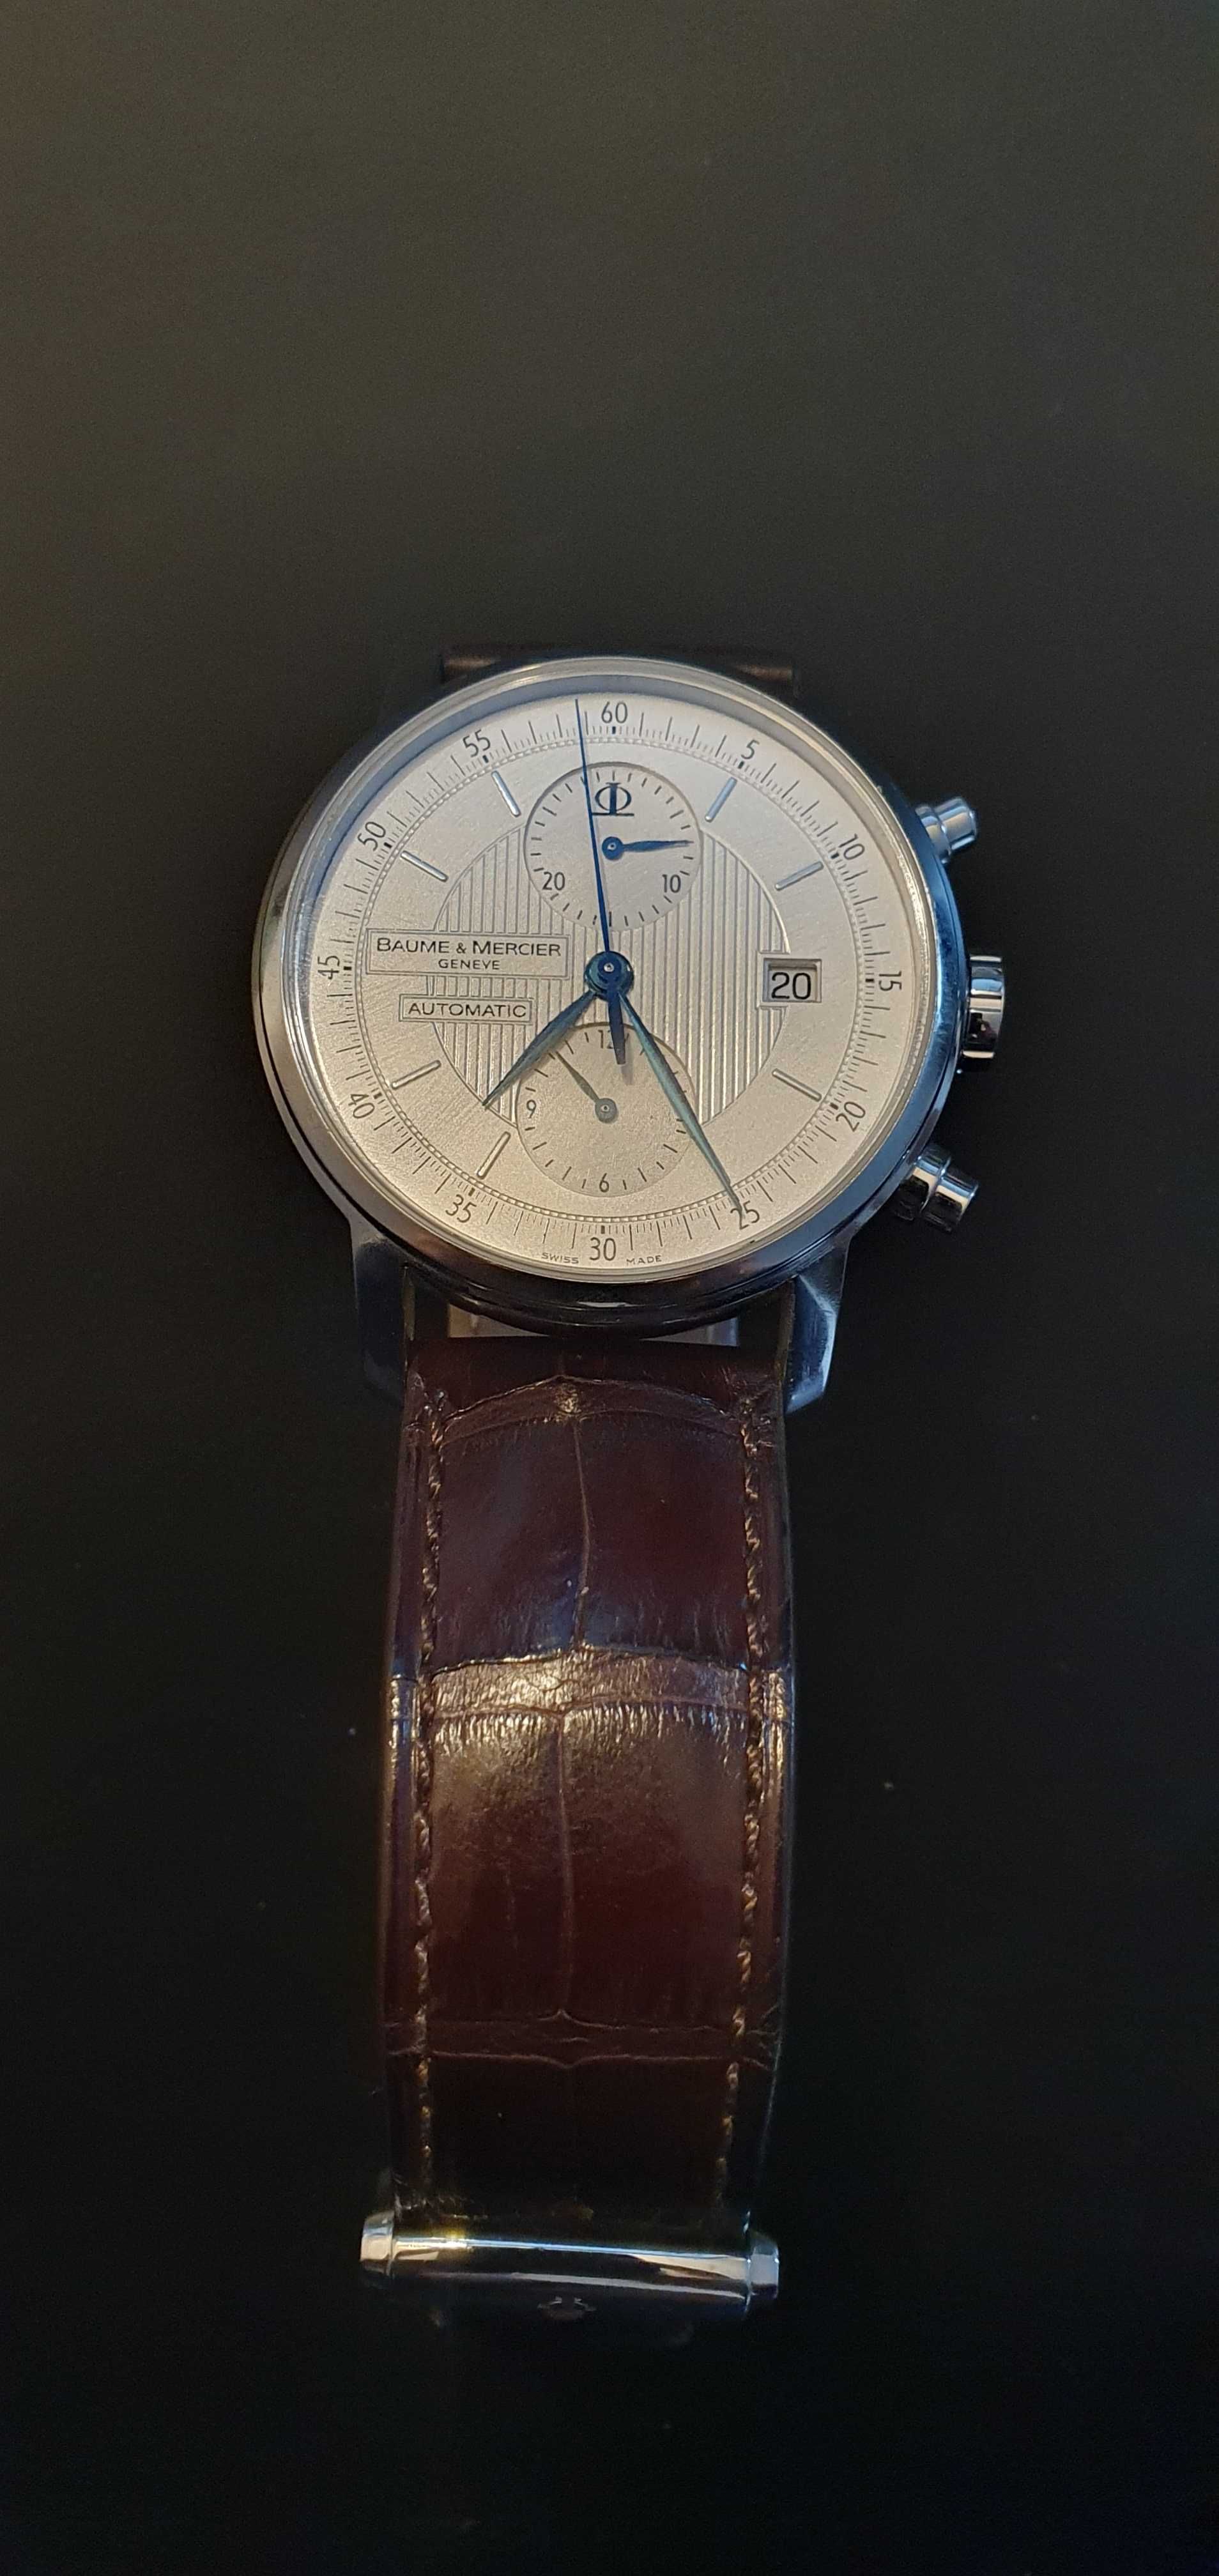 Baume & Mercier Classima Automatic cronometro. caixa e documentos